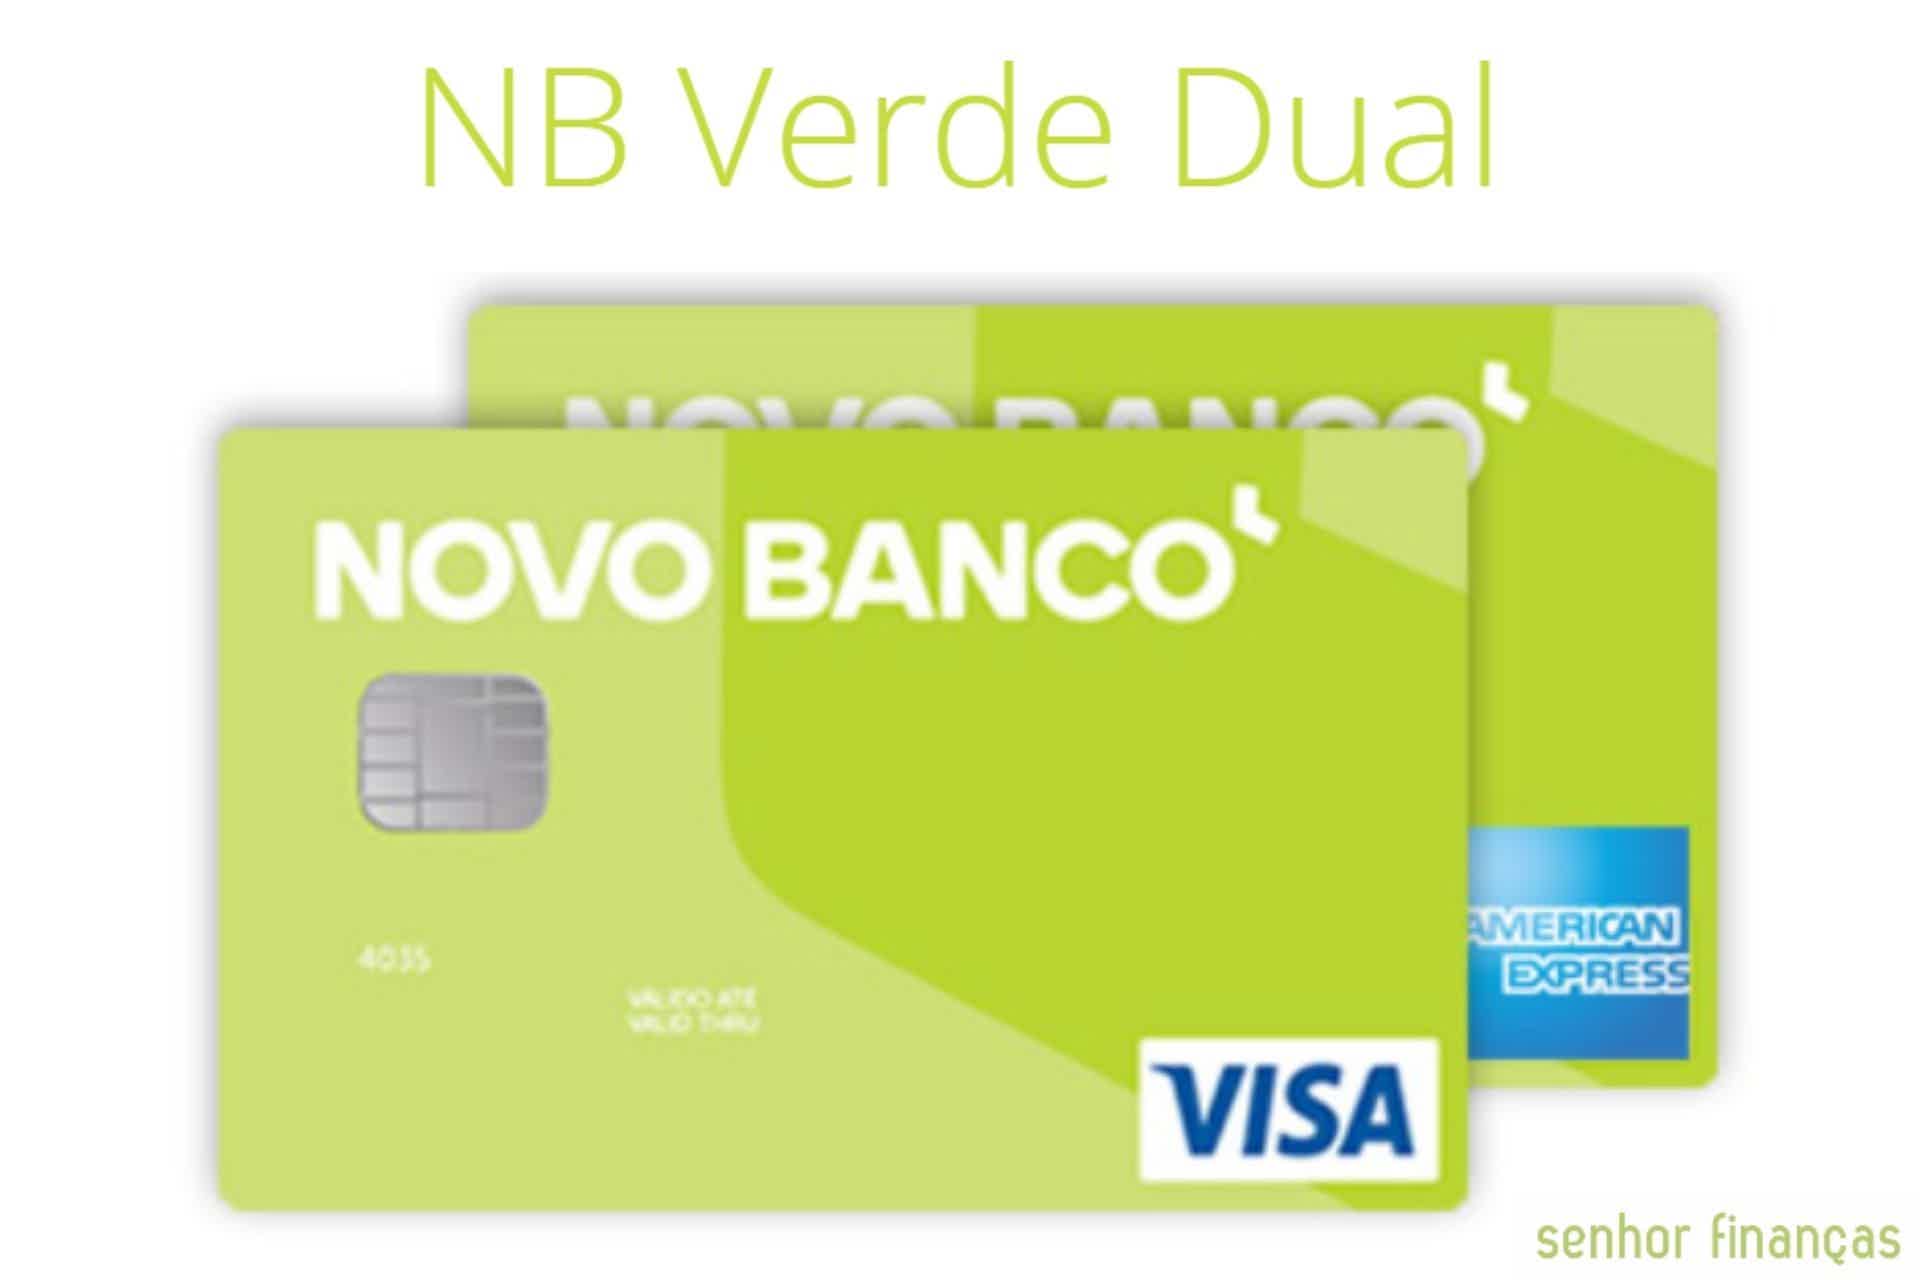 Cartão de crédito NB Verde Dual